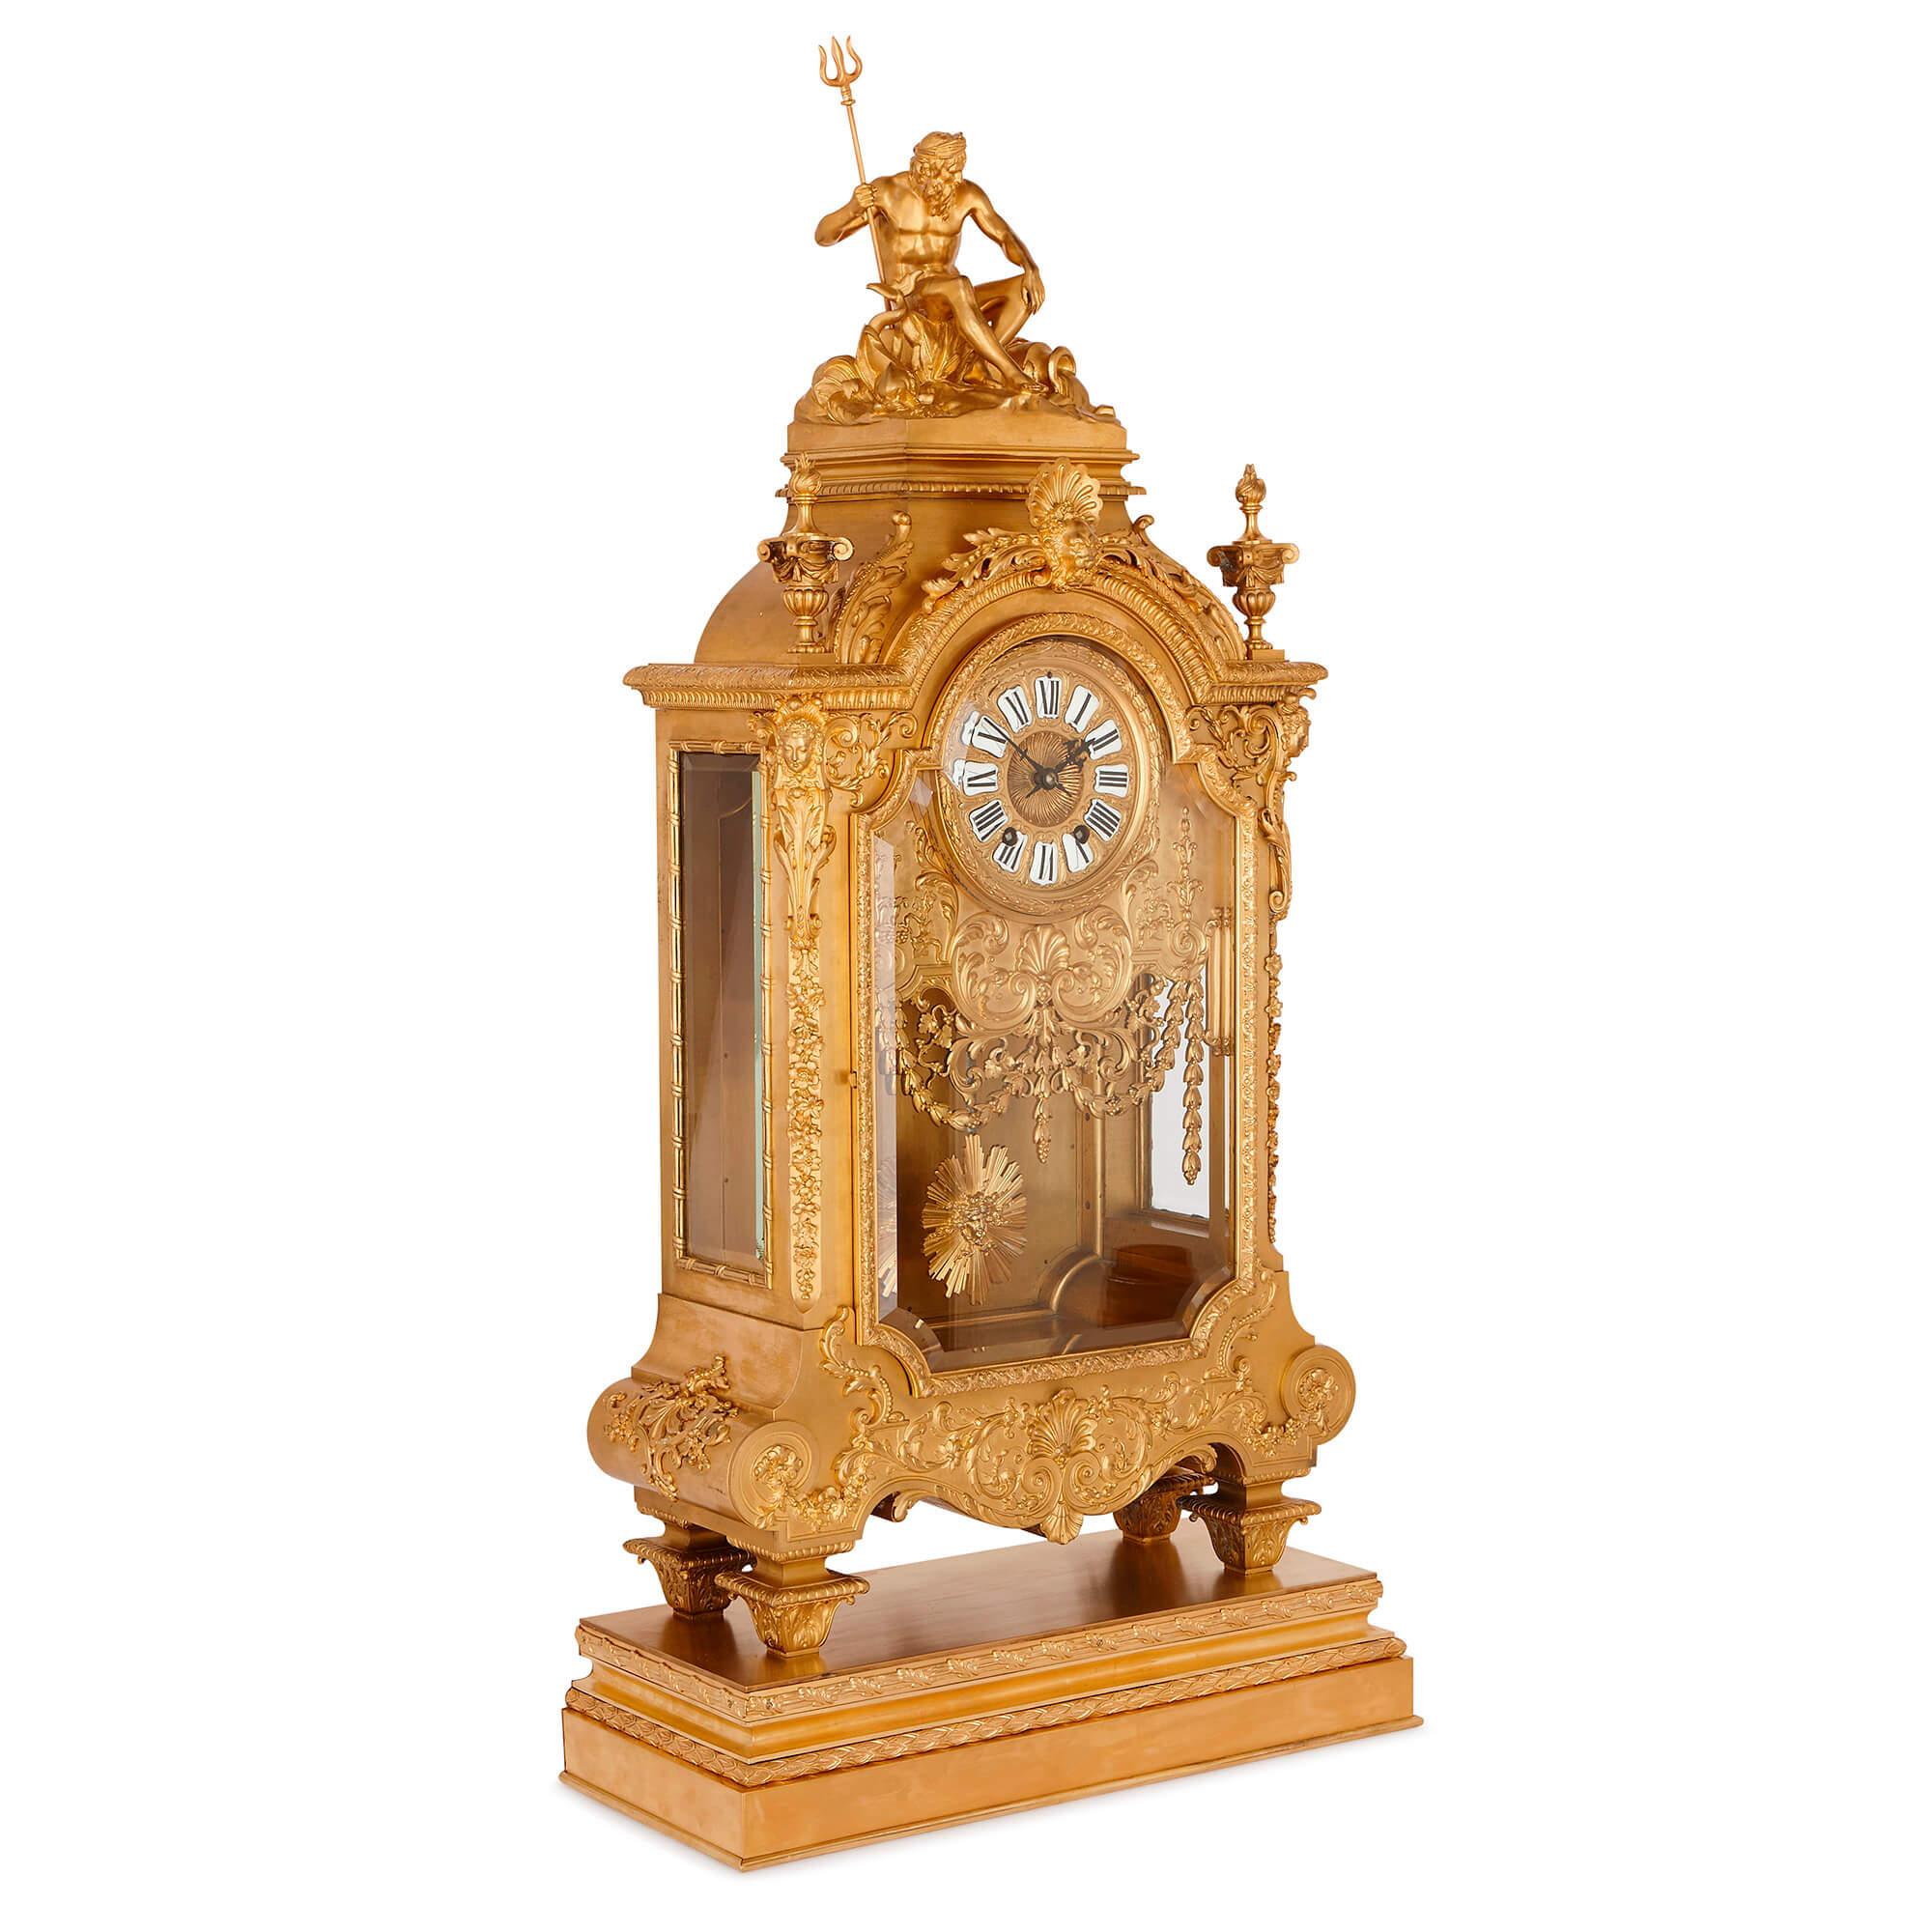 Cette horloge en bronze doré est une œuvre exemplaire du célèbre ferronnier d'art et fondeur français du XIXe siècle, Ferdiand Barbedienne. À partir d'un dessin réalisé par le célèbre ornemaniste Louis-Constant Sevin, Barbedienne a créé une